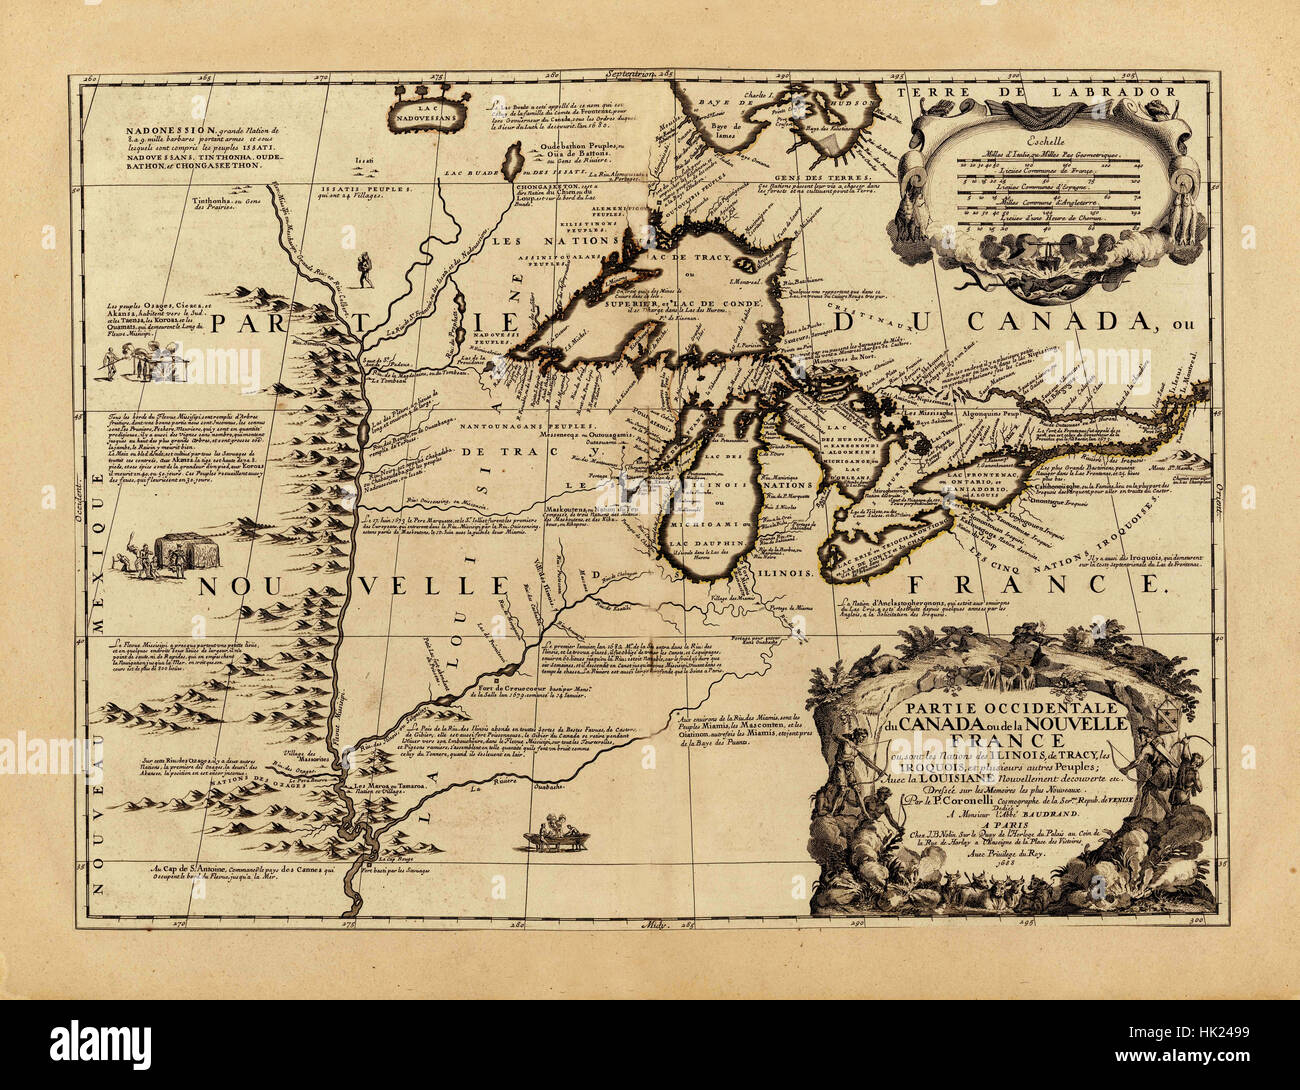 Mapa de la región de los Grandes Lagos 1688 Foto de stock